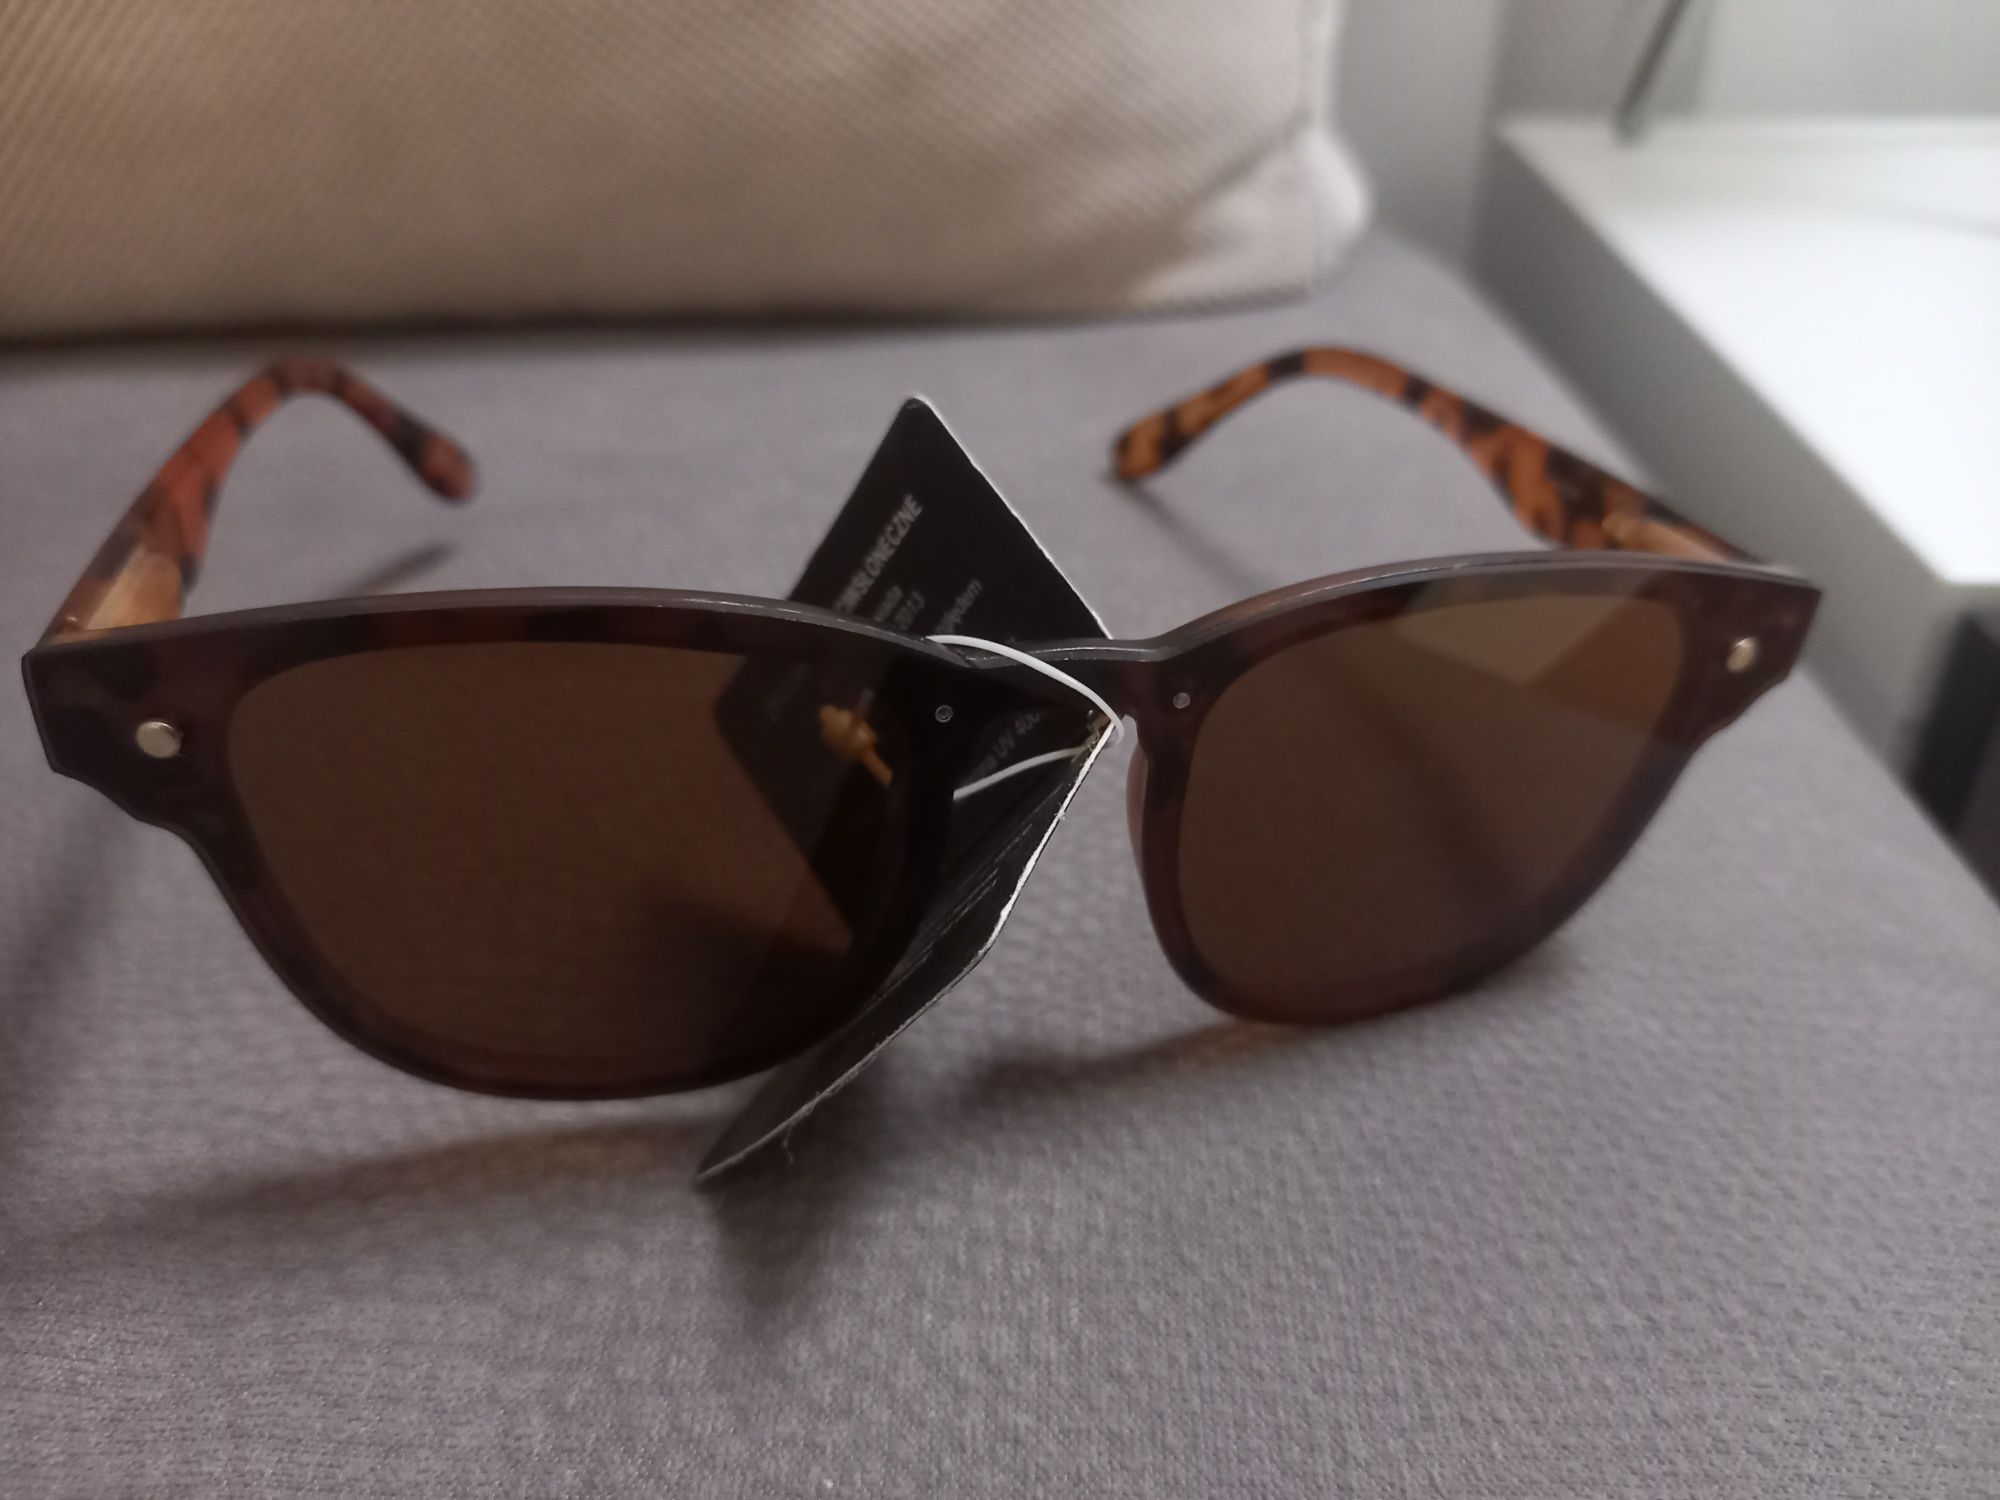 Nowe Okulary przeciwsłoneczne c-o collection